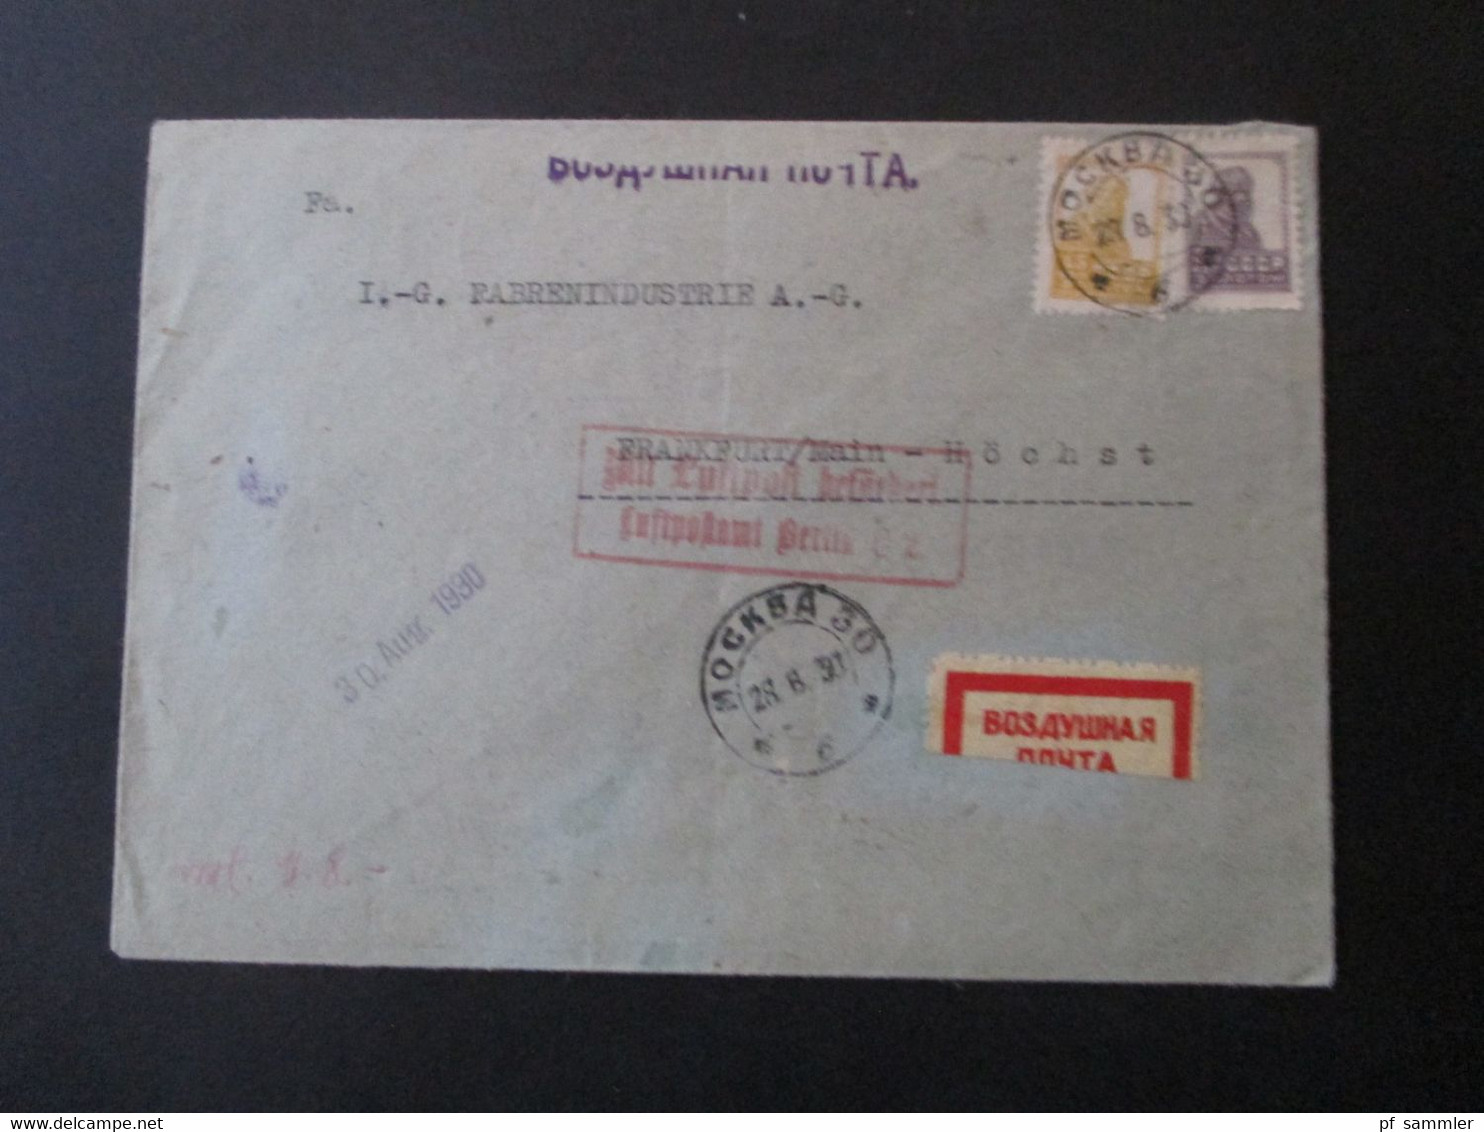 Russland 1930 Moskau - Frankfurt Einschreiben Luftpostbrief Roter Stempel Ra2 Mit Luftpost Befördert Luftpostamt Berlin - Covers & Documents